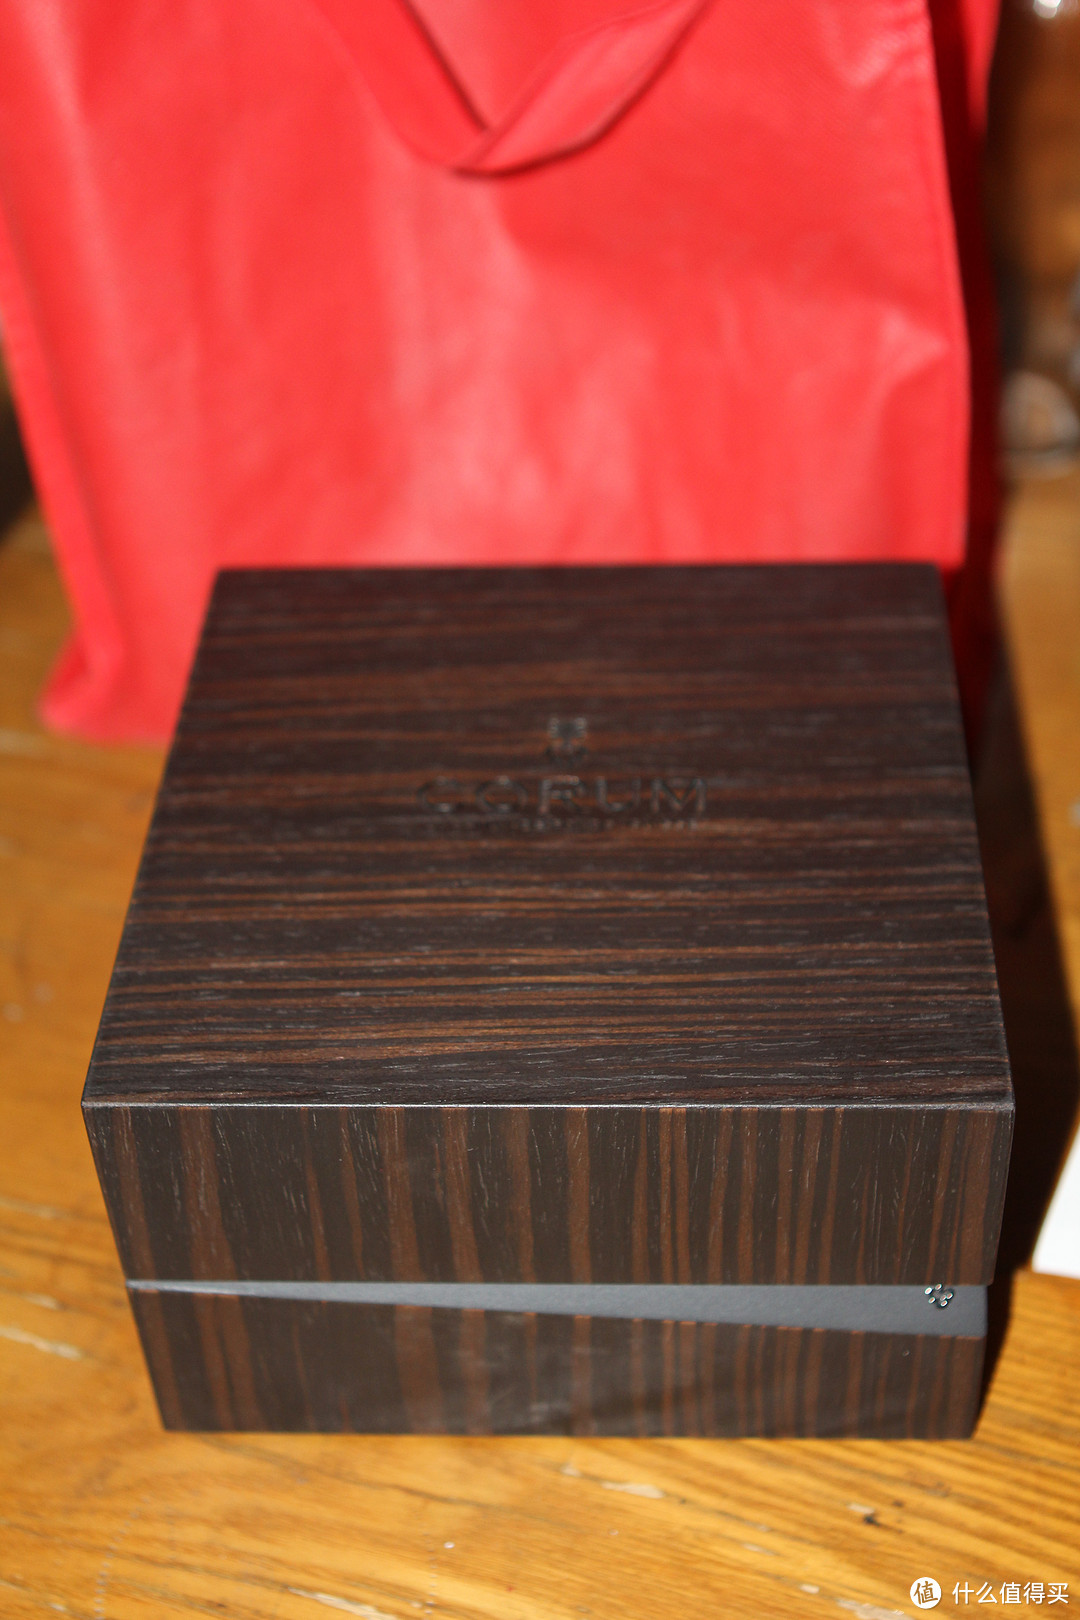 木质的表盒子还是比较让我心仪的， 和我常用的播放器近似。